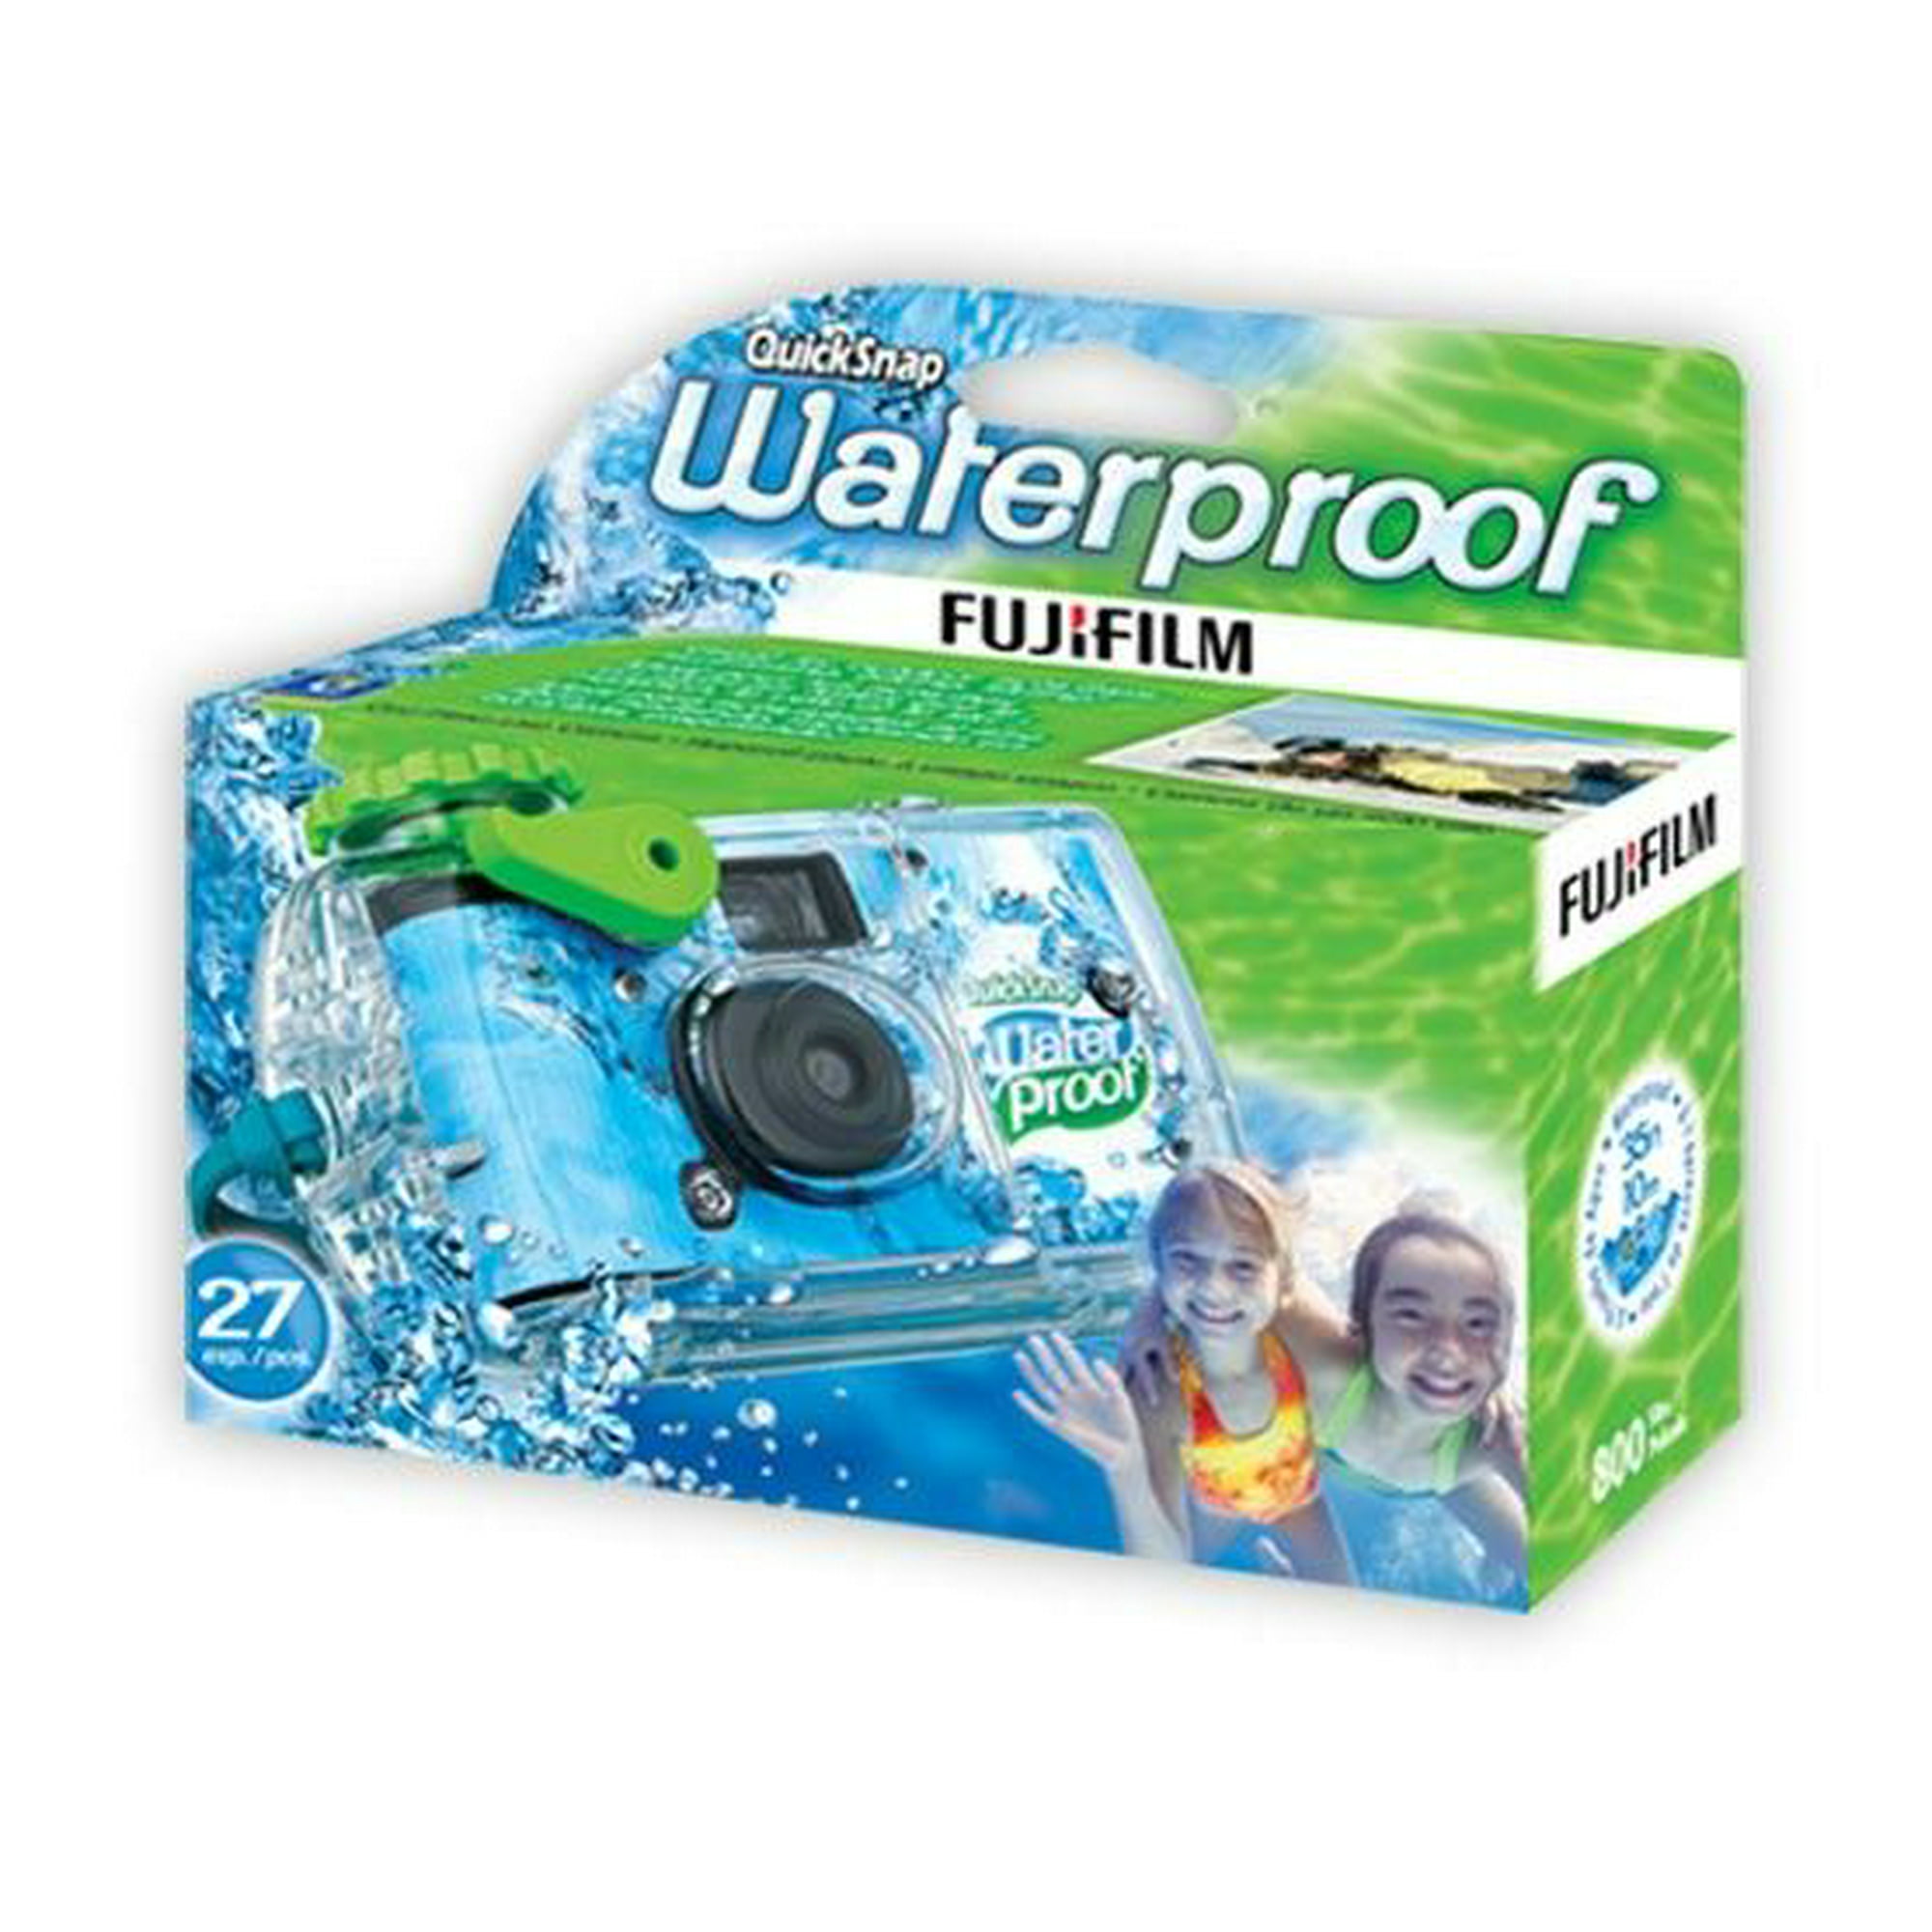 Cámara acuática Fujifilm Waterproof Desechable